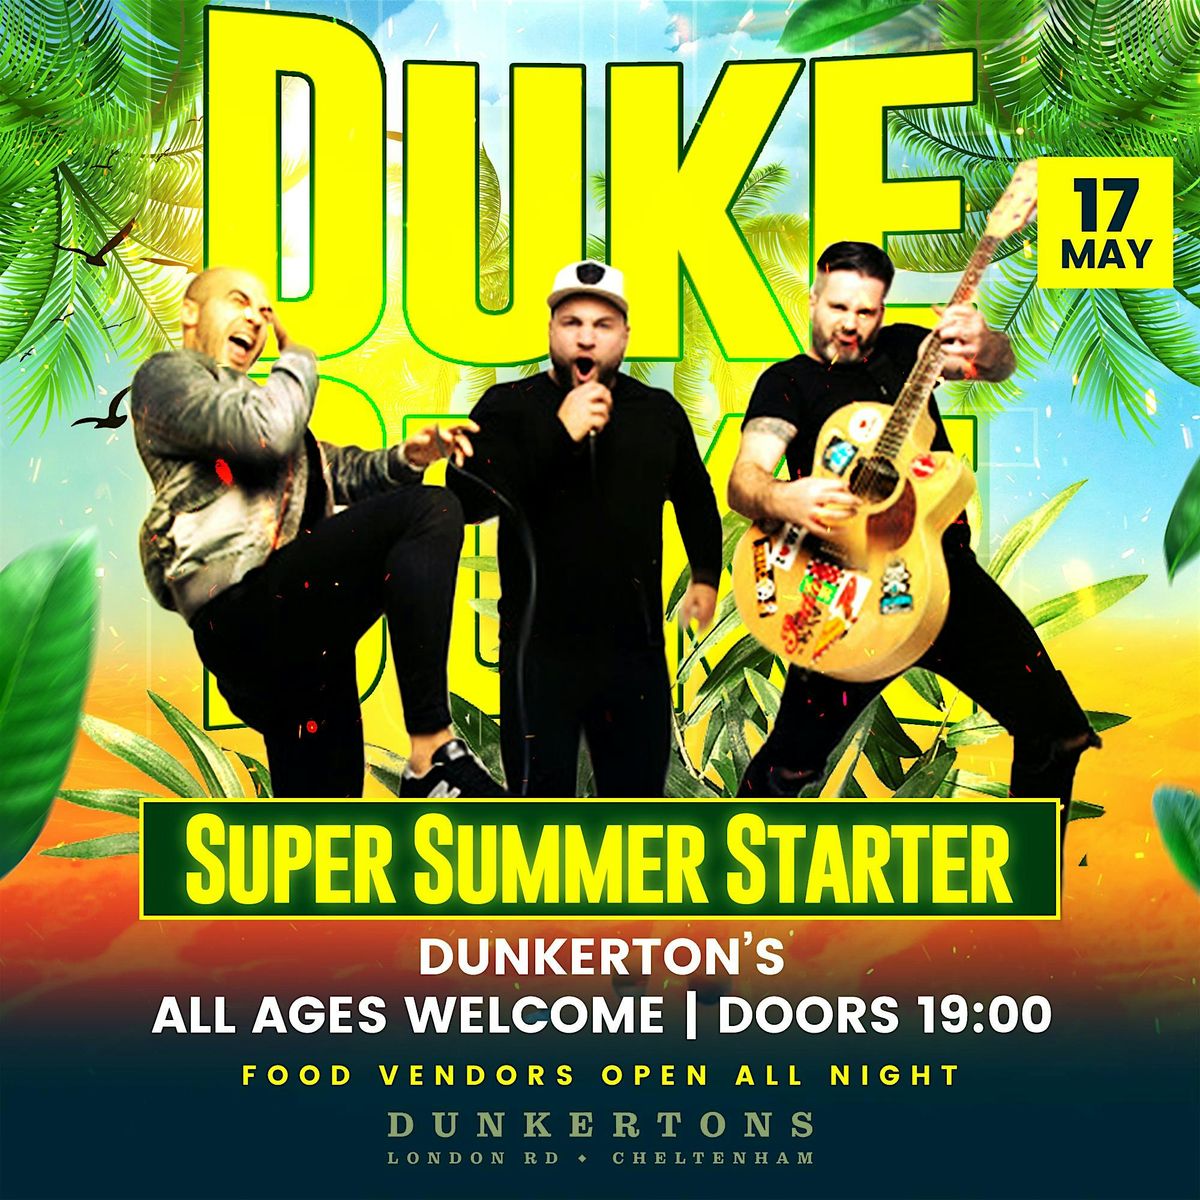 DUKE'S Super Summer Starter!!